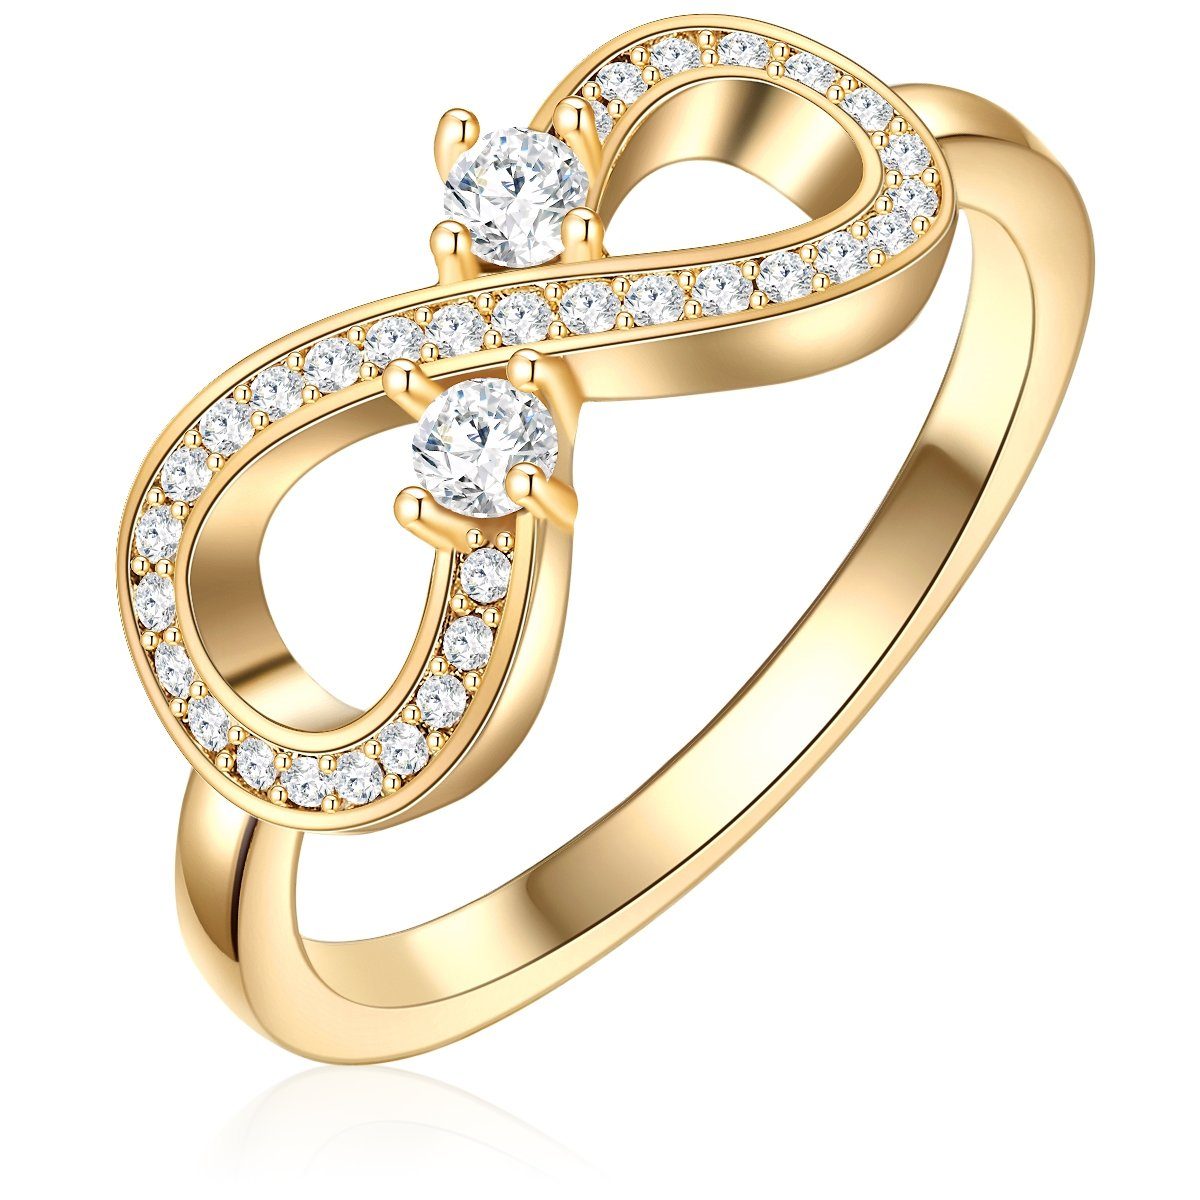 Lulu & Jane Fingerring Ring gelbgold verziert mit Kristallen von Swarovski® weiß | Fingerringe